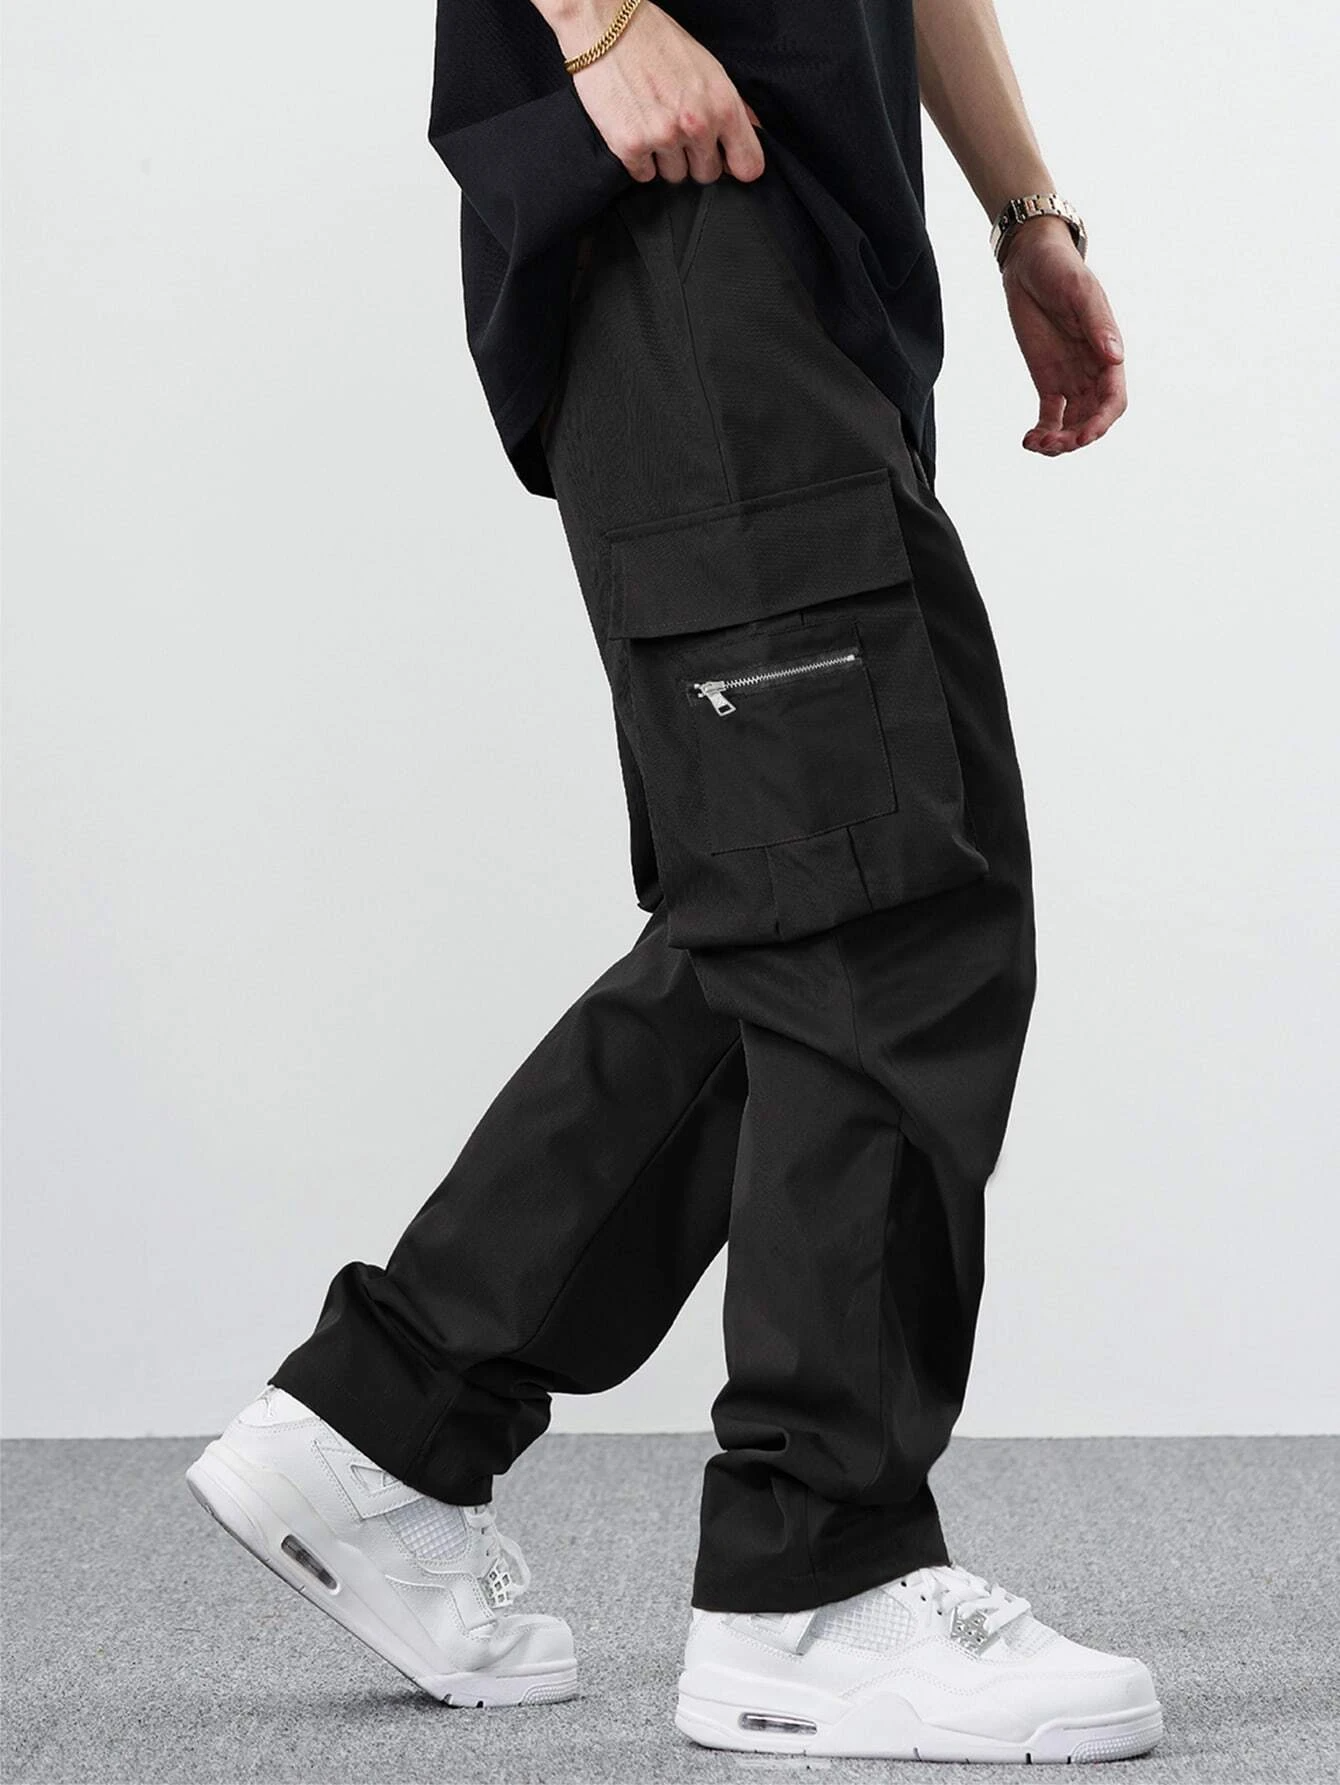 Pantaloni da lavoro dritti casual stile giapponese multitasche larghi da uomo 